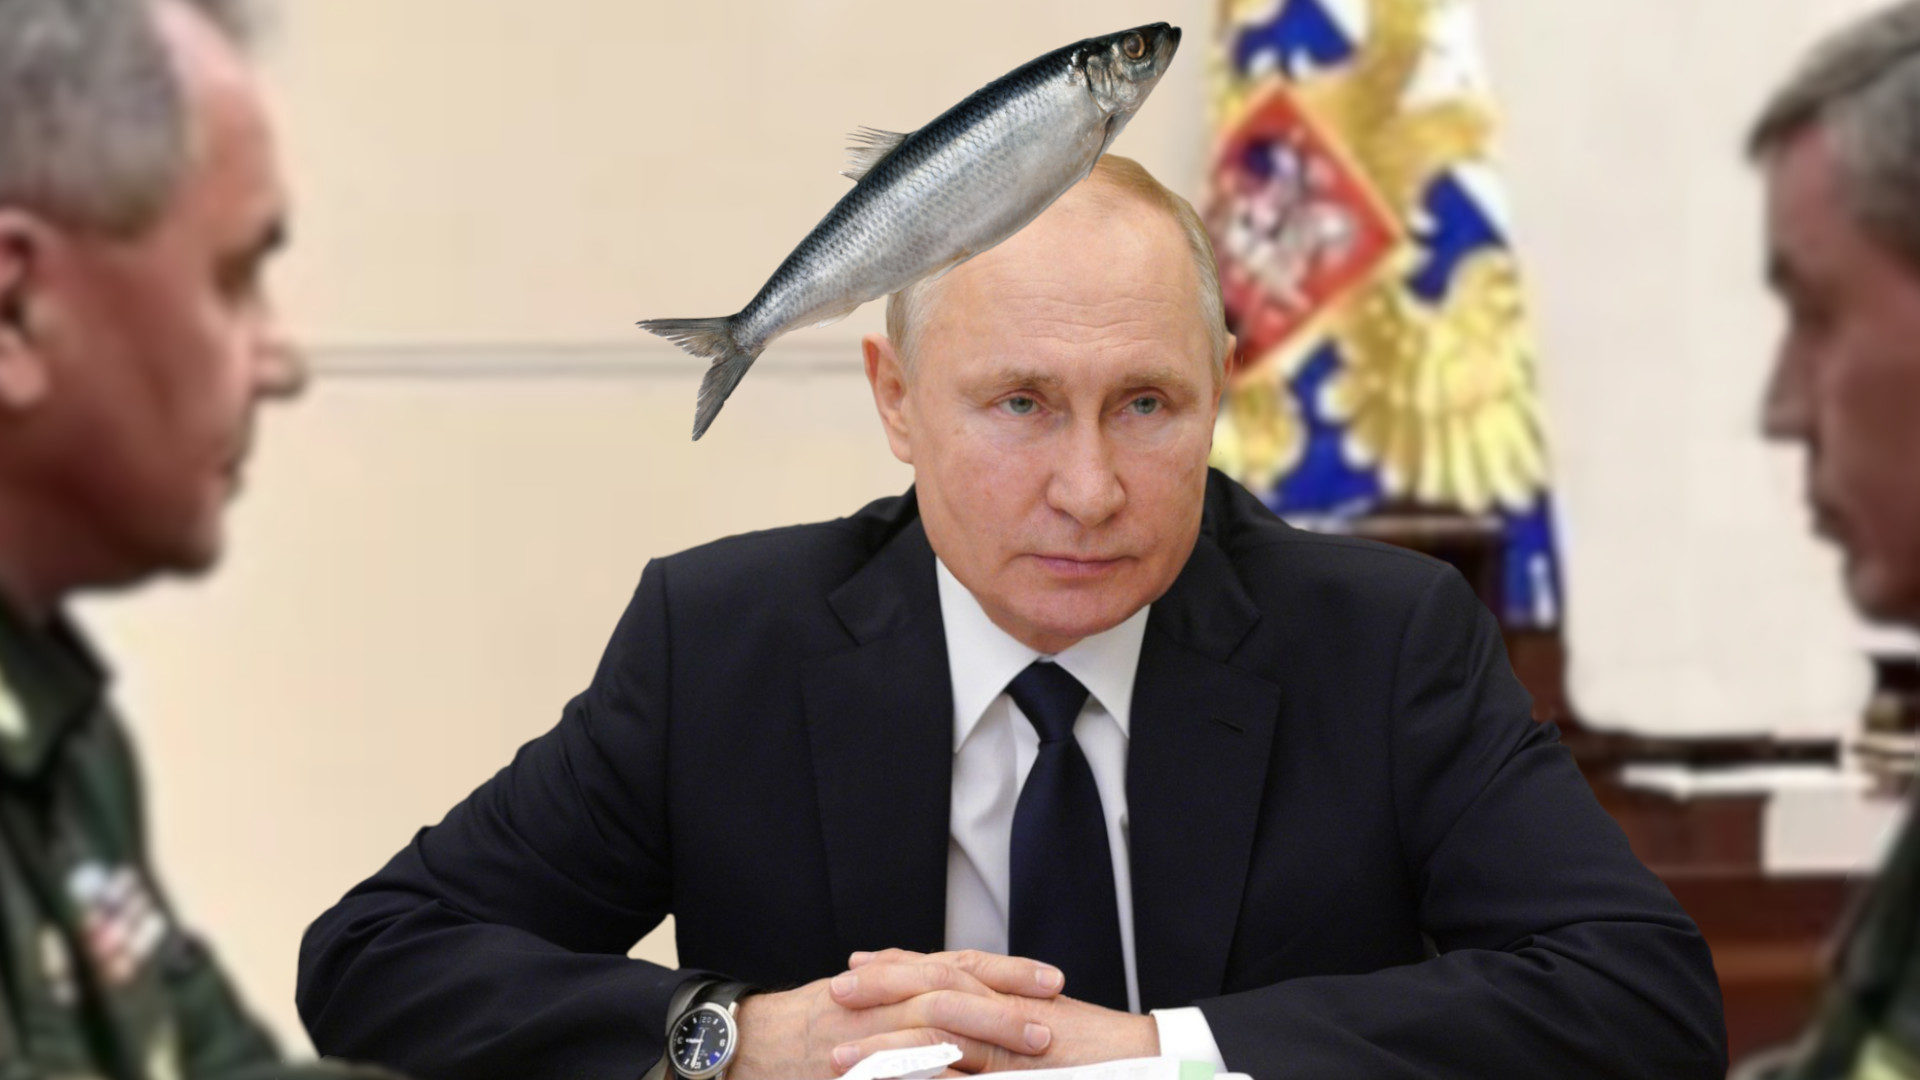 Putin herring fish head